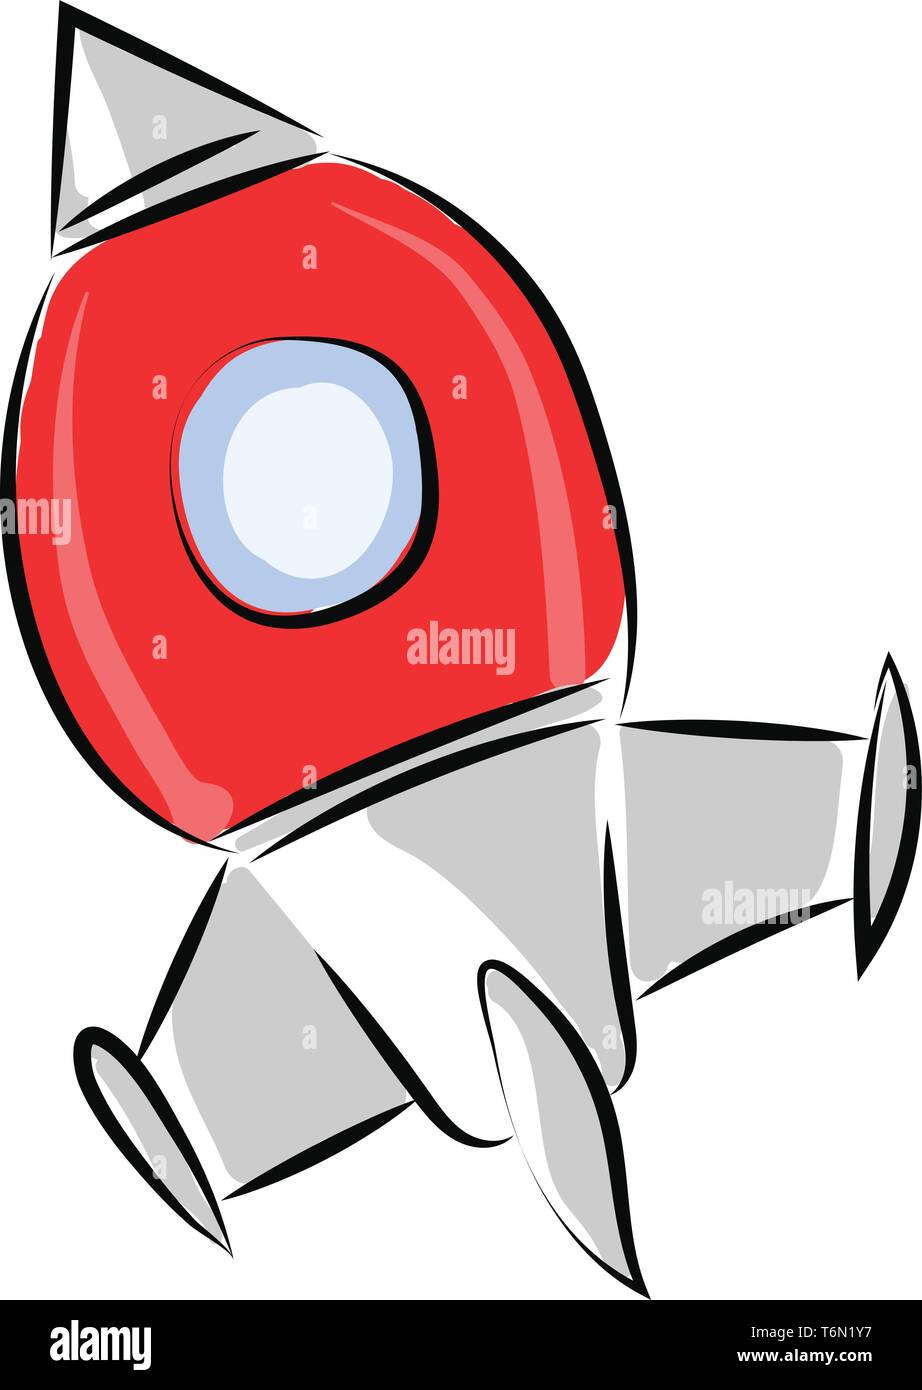 Clipart eines roten Rakete ein zylindrisches Geschoss auf großer Höhe oder Abstand über einen weißen Hintergrund Vektor in der Farbe der Zeichnung oder i Stock Vektor